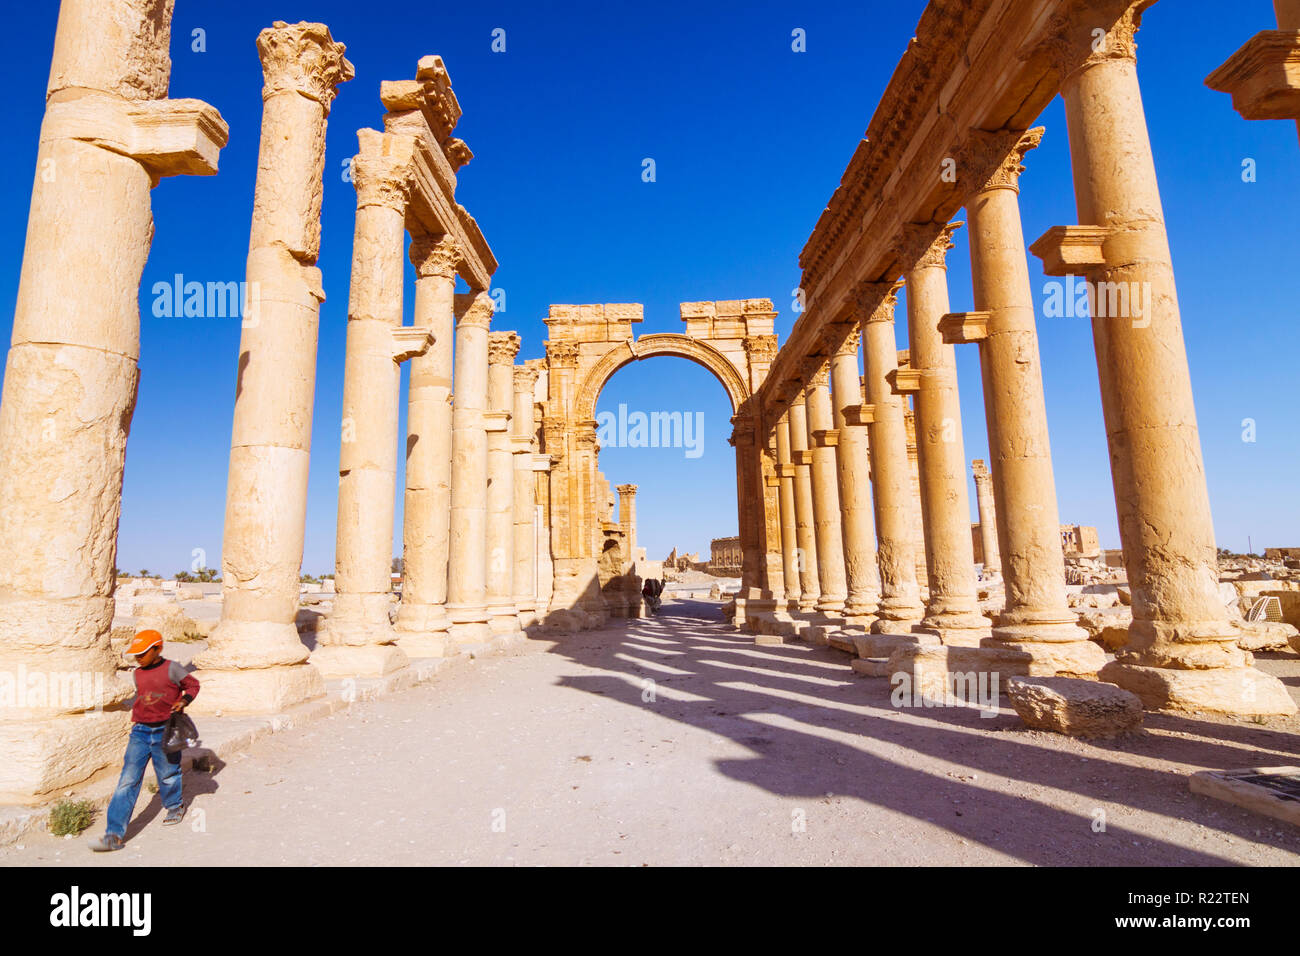 Palmyra, Homs Governatorato, Siria - Maggio 27th, 2009 : un bambino passeggiate lungo il grande colonnato e III secolo monumentale arco di trionfo di Palmyra, un Foto Stock